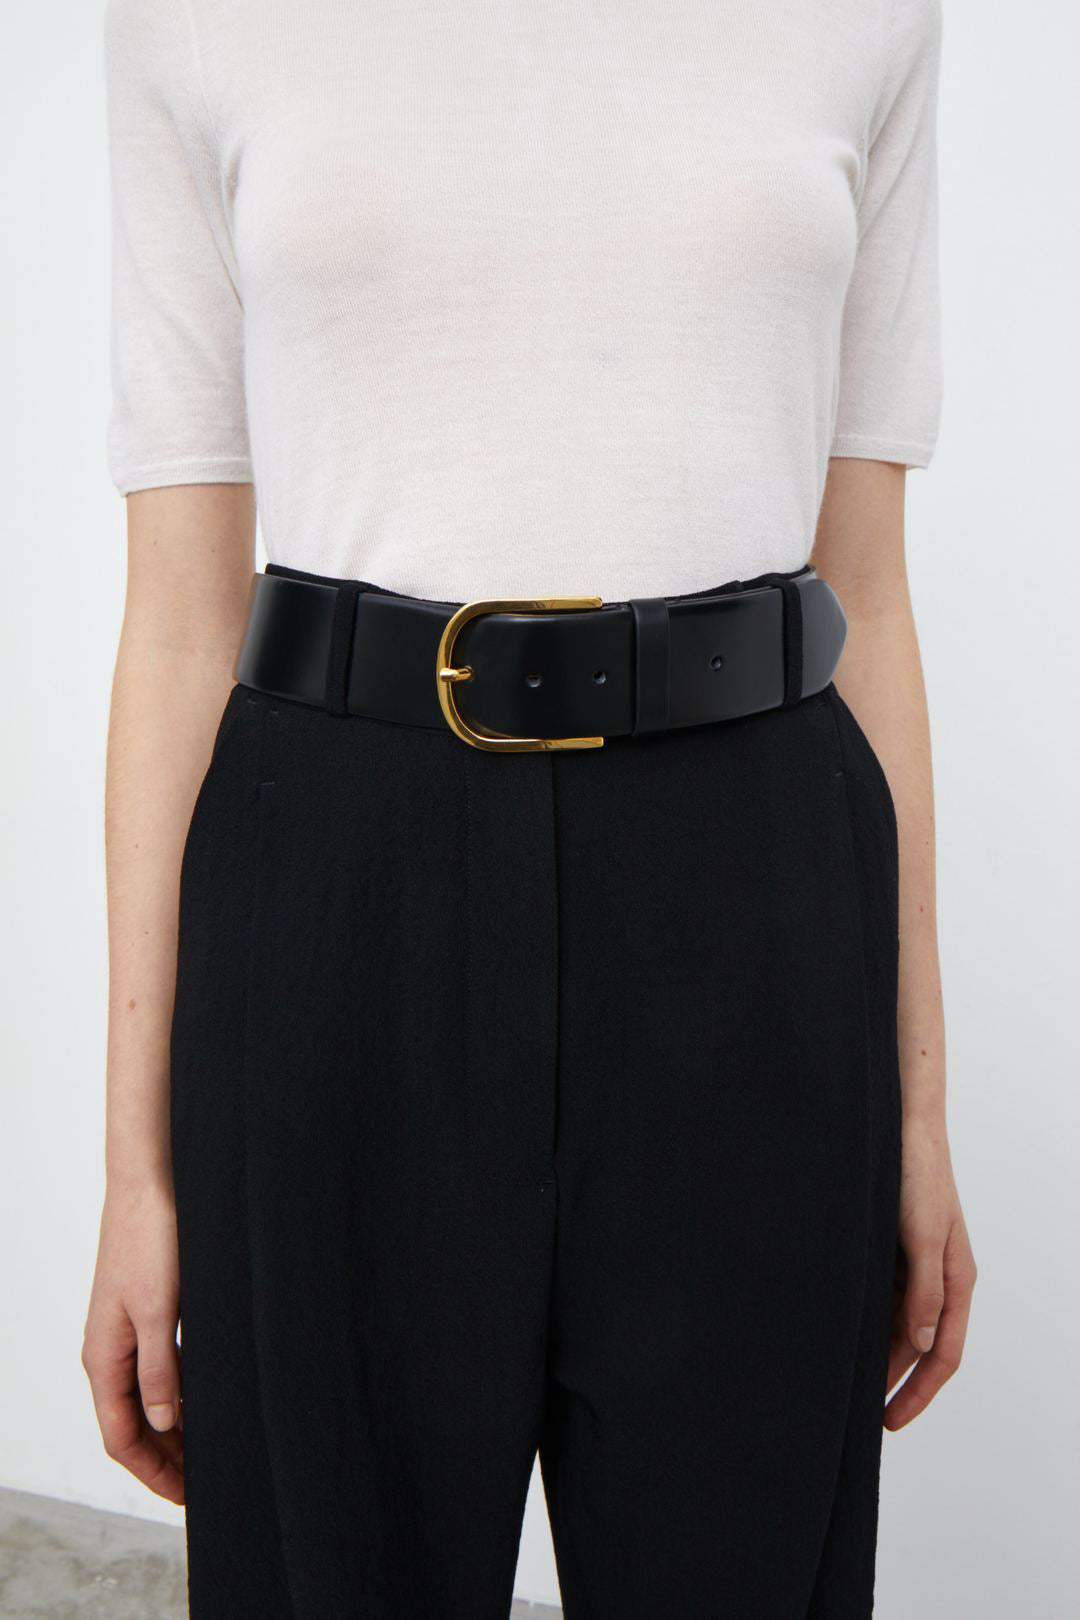 – Trouser Belt in Wide Black